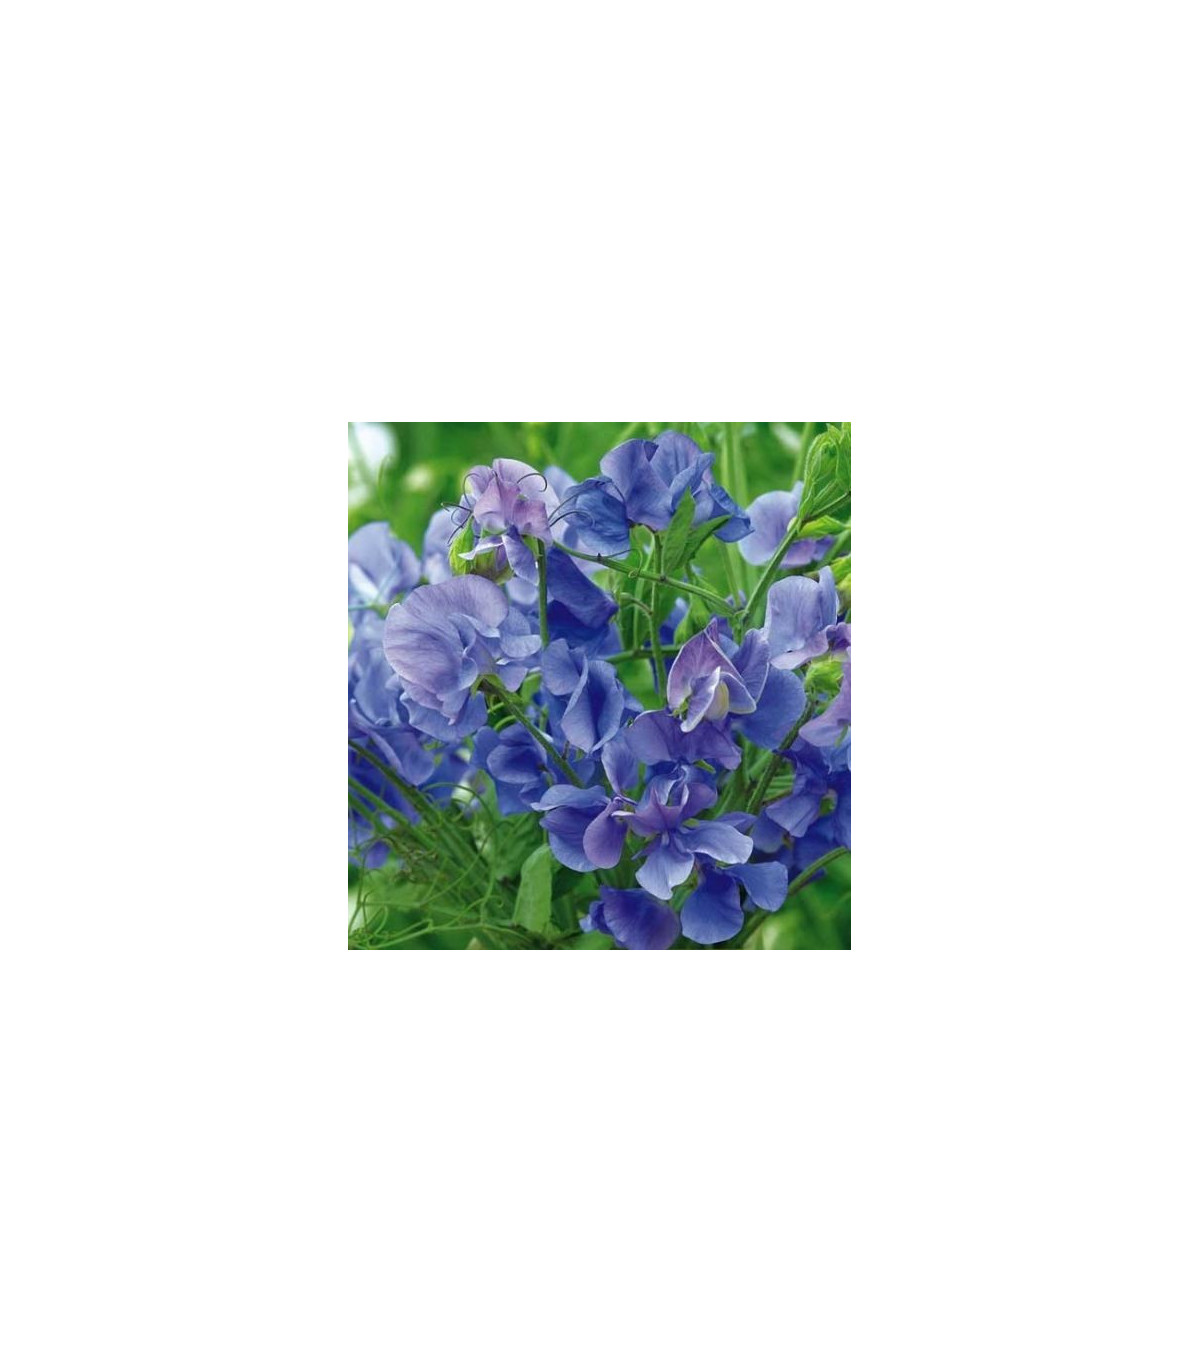 Hrachor voňavý kráľovský modrý - Lathyrus odoratus - semená - 20 ks